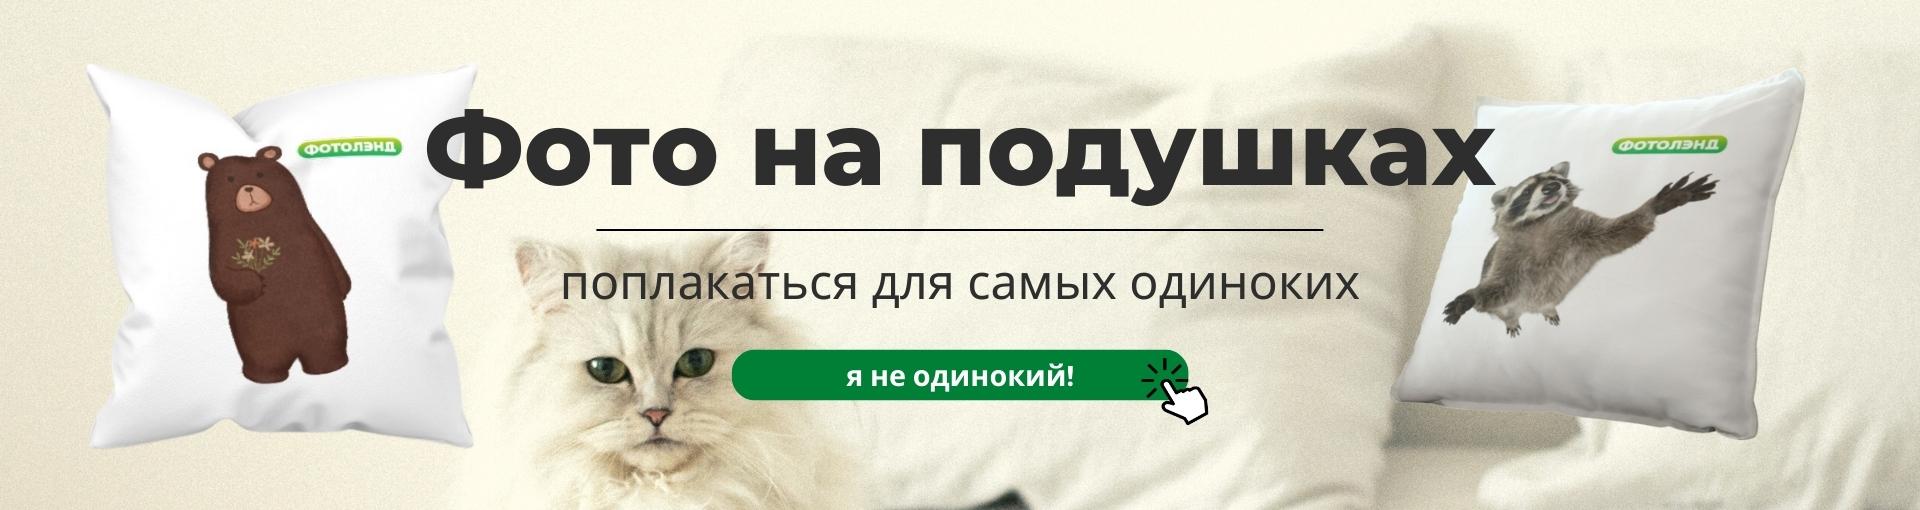 печать на подушках и подушки с фотографией в новосибирске по низким ценам